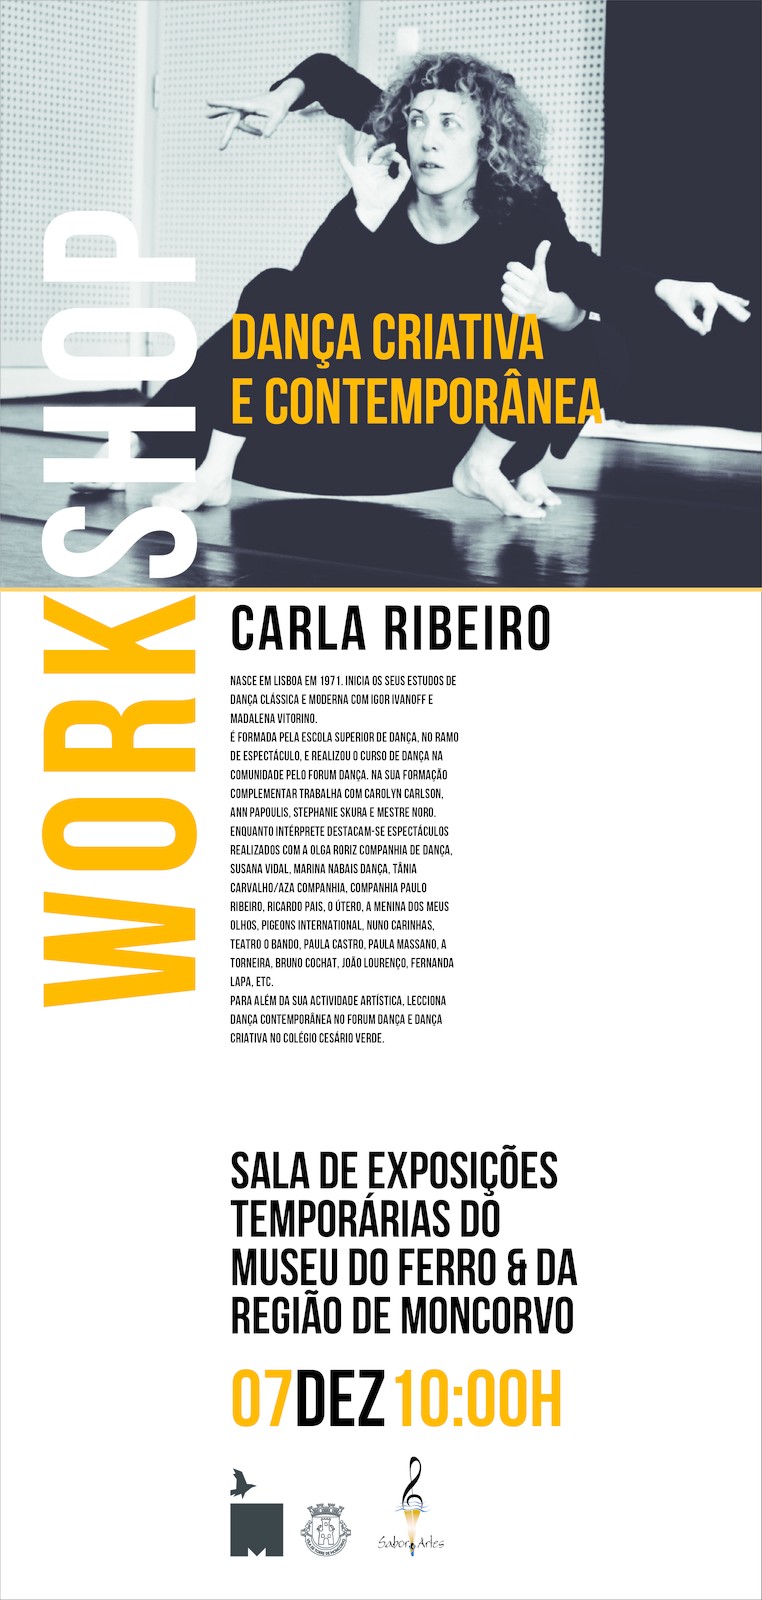 Workshop - "Dança Contemporânea" - Carla Ribeiro